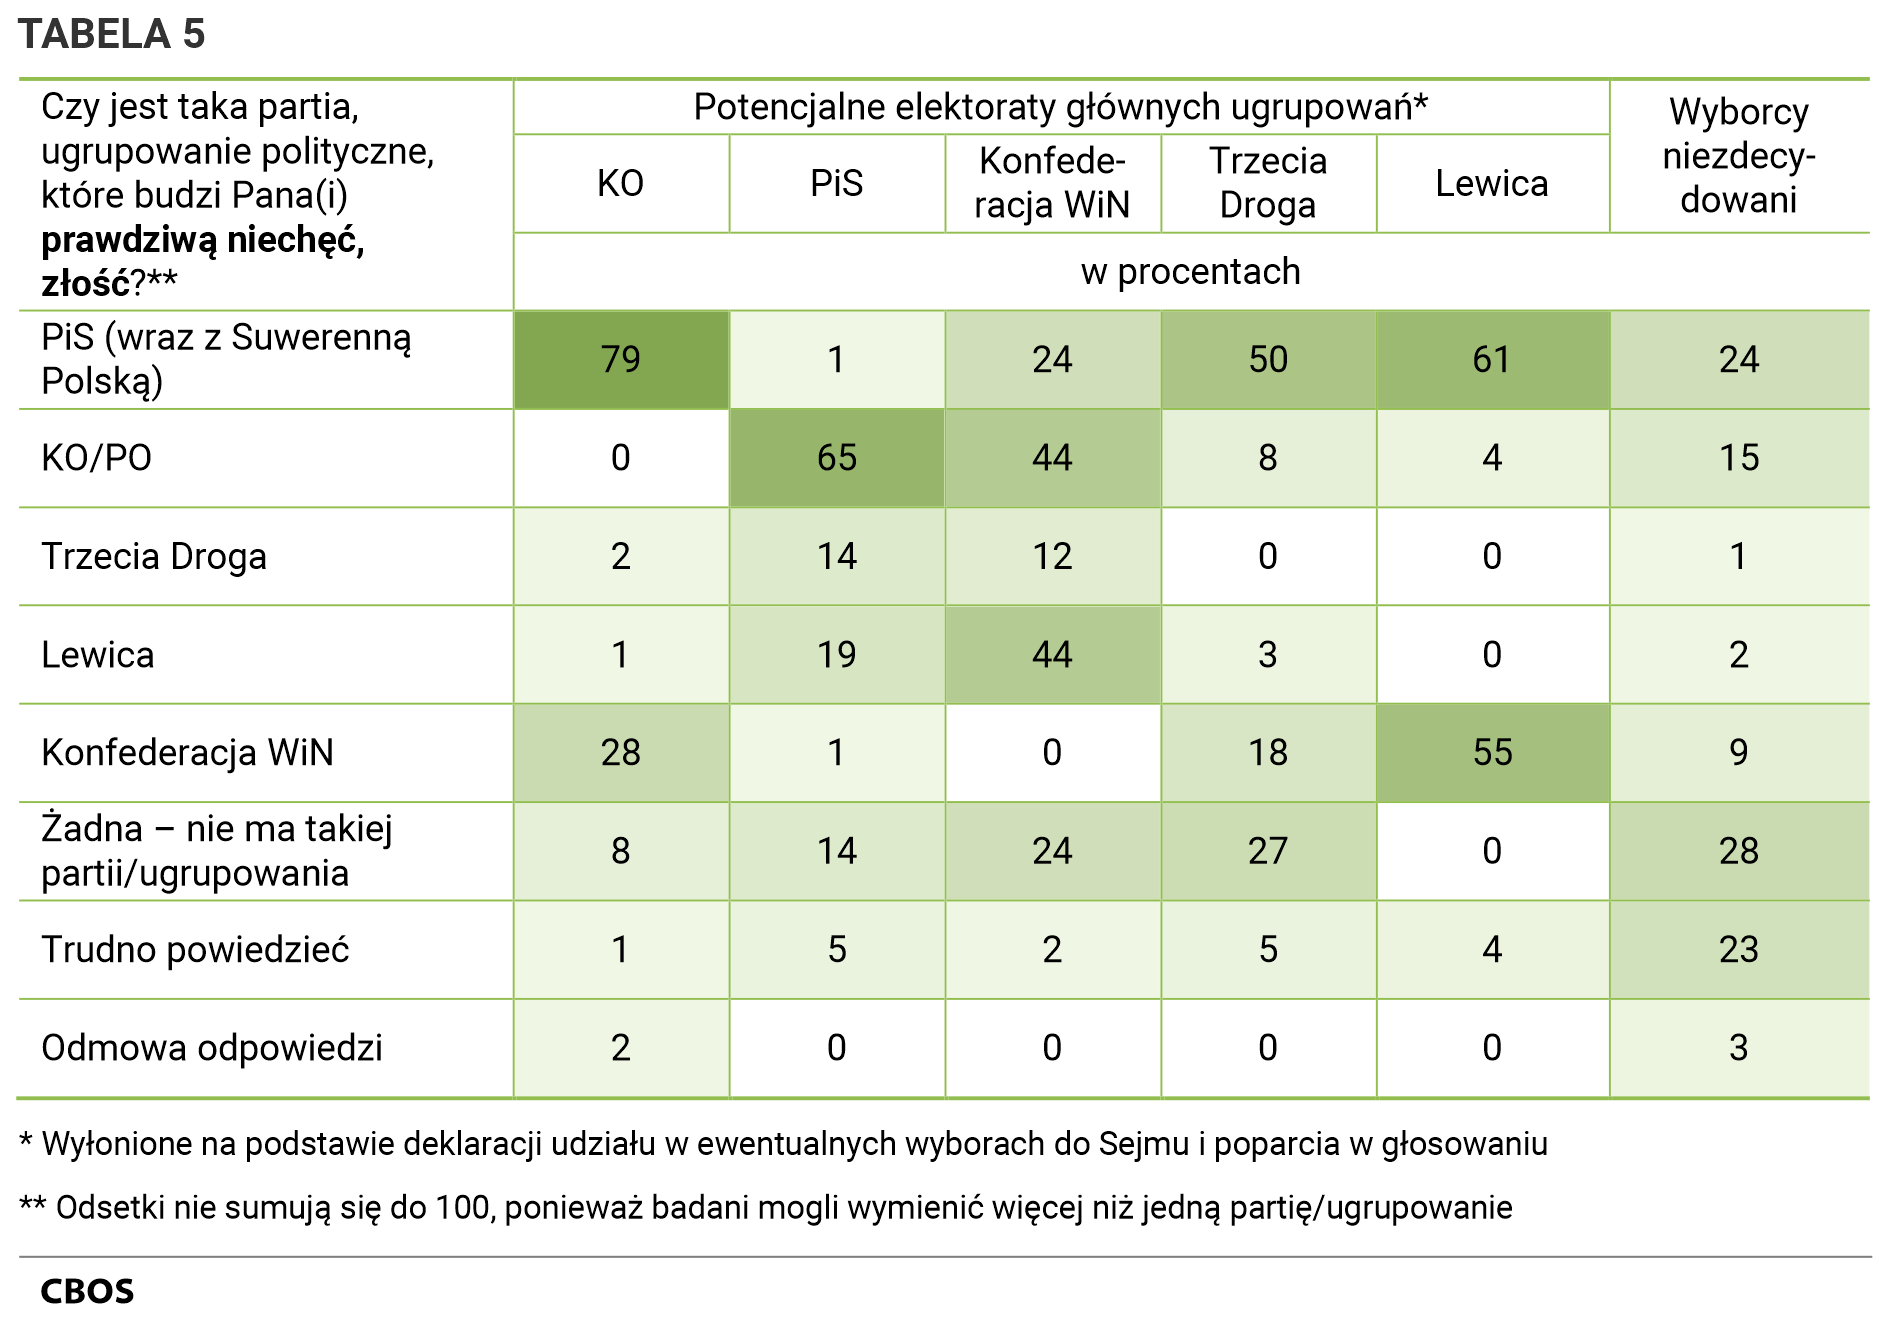 Tabela 5. Czy jest taka partia, ugrupowanie polityczne, które budzi Pana (Pani) prawdziwą niechęć, złość? Odpowiedzi w potencjalnych elektoratach głównych ugrupowań wyłonionych na podstawie deklaracji udziału w ewentualnych wyborach do Sejmu i poparcia w głosowaniu oraz wśród wyborców niezdecydowanych.- KO: PiS (wraz z Suwerenną Polską) - 79%, KO/PO - 0%, Trzecia Droga - 2%, Lewica - 1%, Konfederacja WiN - 28%, Żadna – nie ma takiej partii/ugrupowania - 8%, Trudno powiedzieć - 1%, Odmowa odpowiedzi - 2%.  – PiS: PiS (wraz z Suwerenną Polską) - 1%, KO/PO - 65%, Trzecia Droga - 14%, Lewica - 19%, Konfederacja WiN - 1%, Żadna – nie ma takiej partii/ugrupowania - 14%, Trudno powiedzieć - 5%, Odmowa odpowiedzi - 0%.  - Konfederacja WiN: PiS (wraz z Suwerenną Polską) - 24%, KO/PO - 44%, Trzecia Droga - 12%, Lewica - 44%, Konfederacja WiN - 0%, Żadna – nie ma takiej partii/ugrupowania - 24%, Trudno powiedzieć - 2%, Odmowa odpowiedzi - 0%.  - Trzecia Droga: PiS (wraz z Suwerenną Polską) - 50%, KO/PO - 8%, Trzecia Droga - 0%, Lewica - 3%, Konfederacja WiN - 18%, Żadna – nie ma takiej partii/ugrupowania - 27%, Trudno powiedzieć - 5%, Odmowa odpowiedzi - 0%.  – Lewica: PiS (wraz z Suwerenną Polską) - 61%, KO/PO - 4%, Trzecia Droga - 0%, Lewica - 0%, Konfederacja WiN - 55%, Żadna – nie ma takiej partii/ugrupowania - 0%, Trudno powiedzieć - 4%, Odmowa odpowiedzi - 0%.  - Wyborcy niezdecy¬dowani: PiS (wraz z Suwerenną Polską) - 24%, KO/PO - 15%, Trzecia Droga - 1%, Lewica - 2%, Konfederacja WiN - 9%, Żadna – nie ma takiej partii/ugrupowania - 28%, Trudno powiedzieć - 23%, Odmowa odpowiedzi - 3%. Odsetki nie sumują się do 100, ponieważ badani mogli wymienić więcej niż jedną partię/ugrupowanie